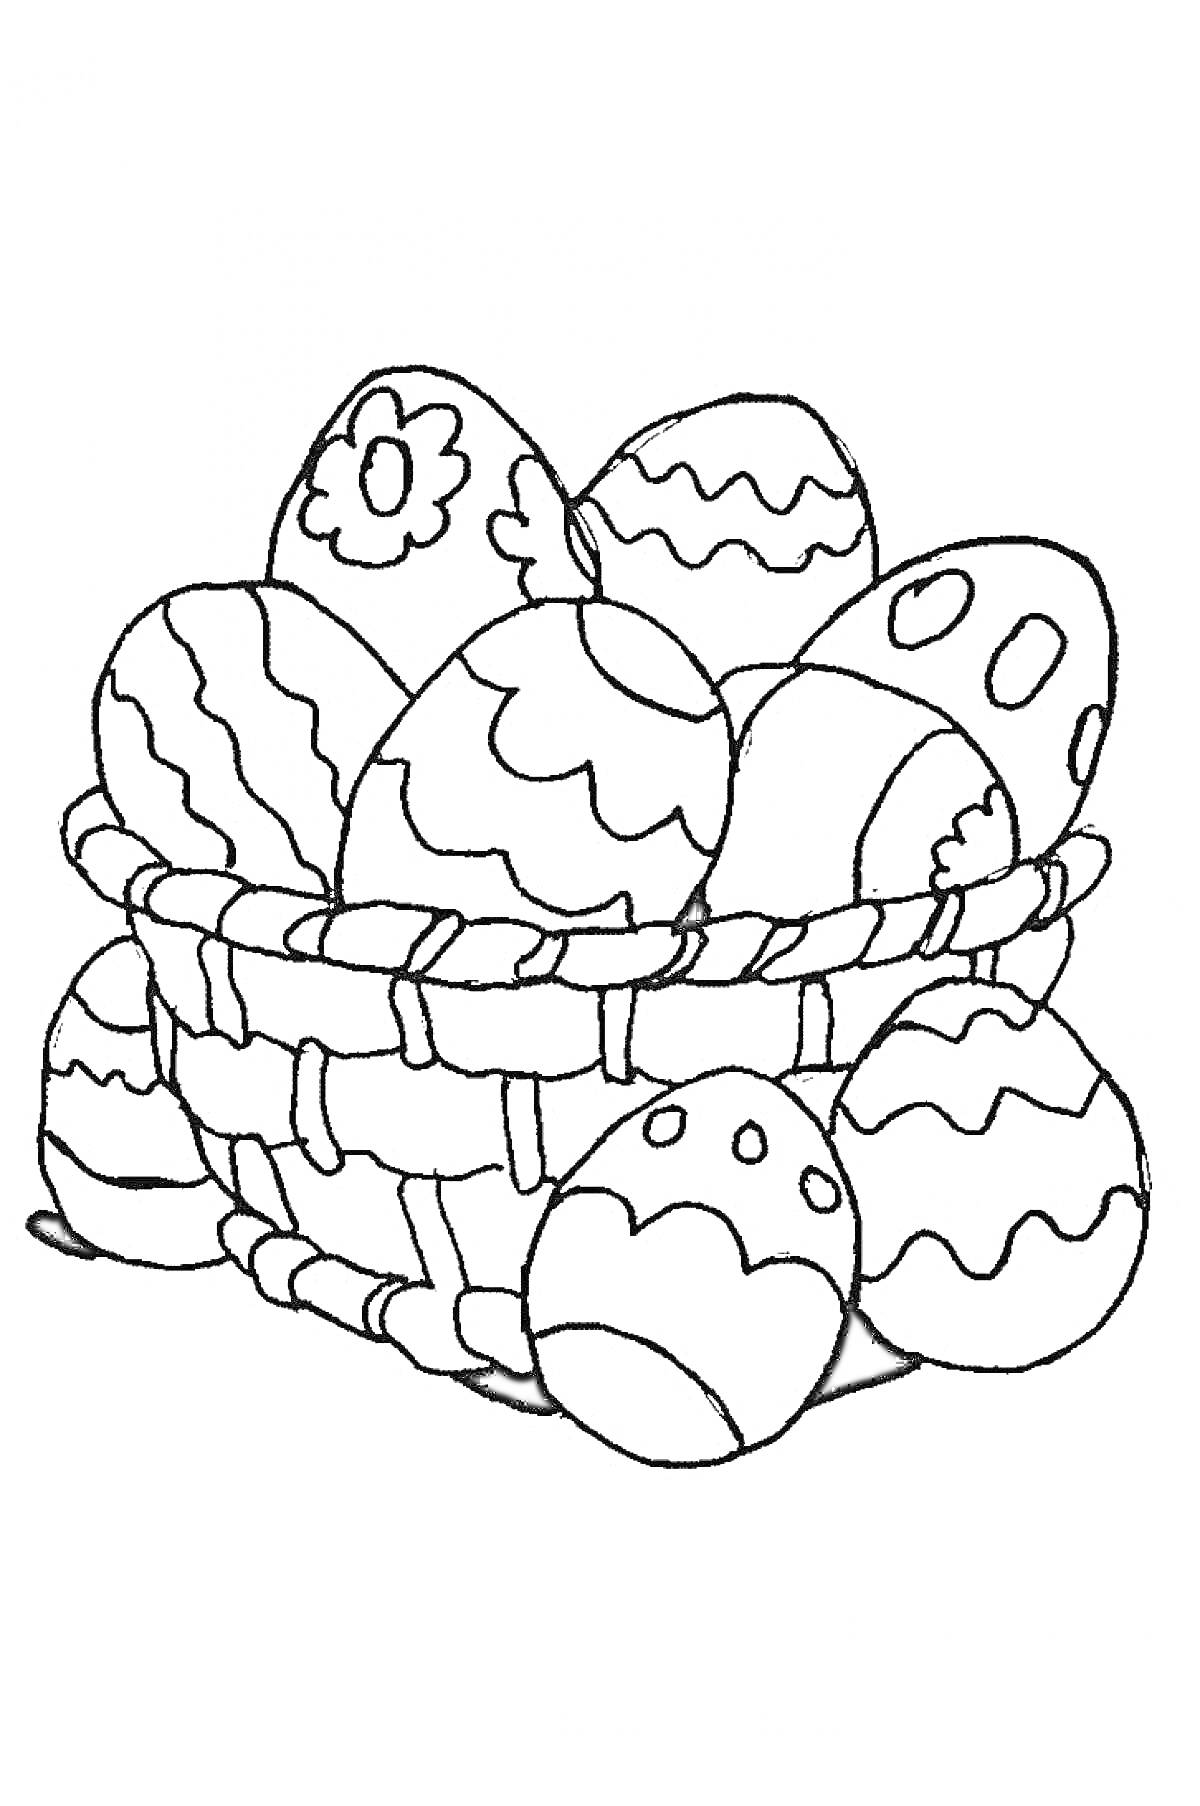 Раскраска Пасхальная корзинка с украшенными яйцами